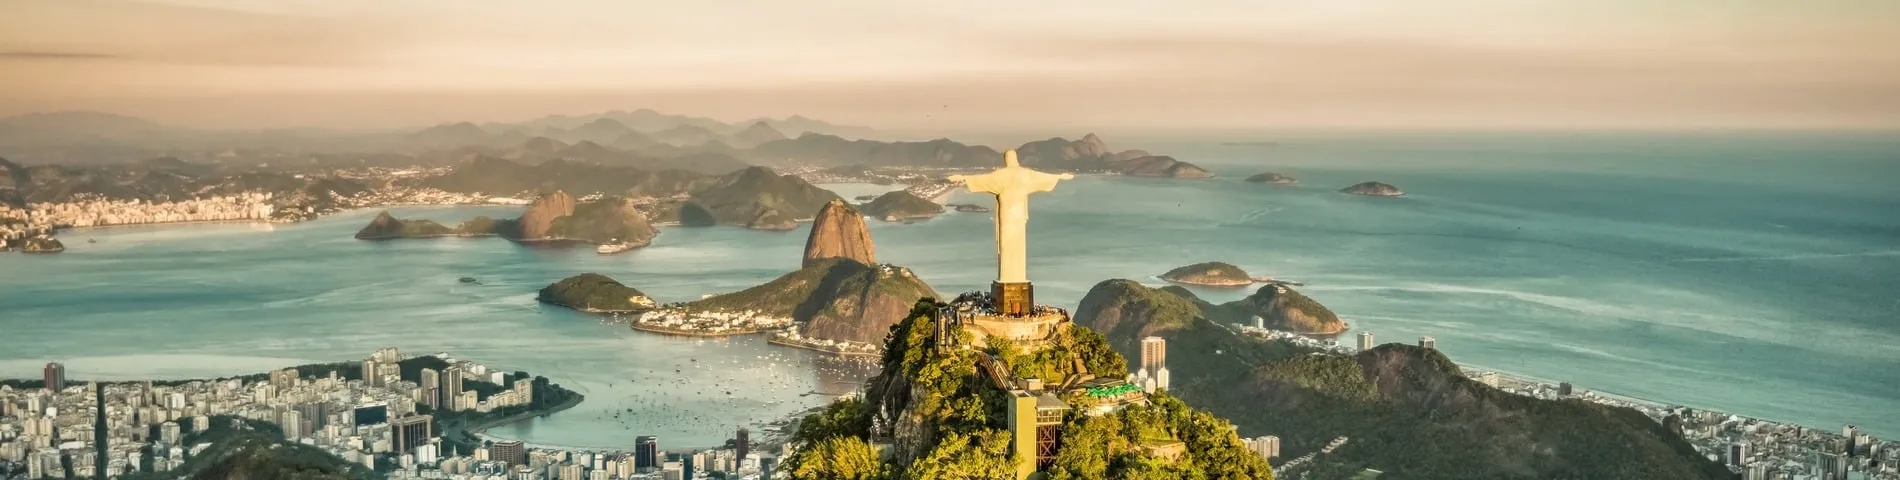 Rio de Janeiro - Altres exàmens